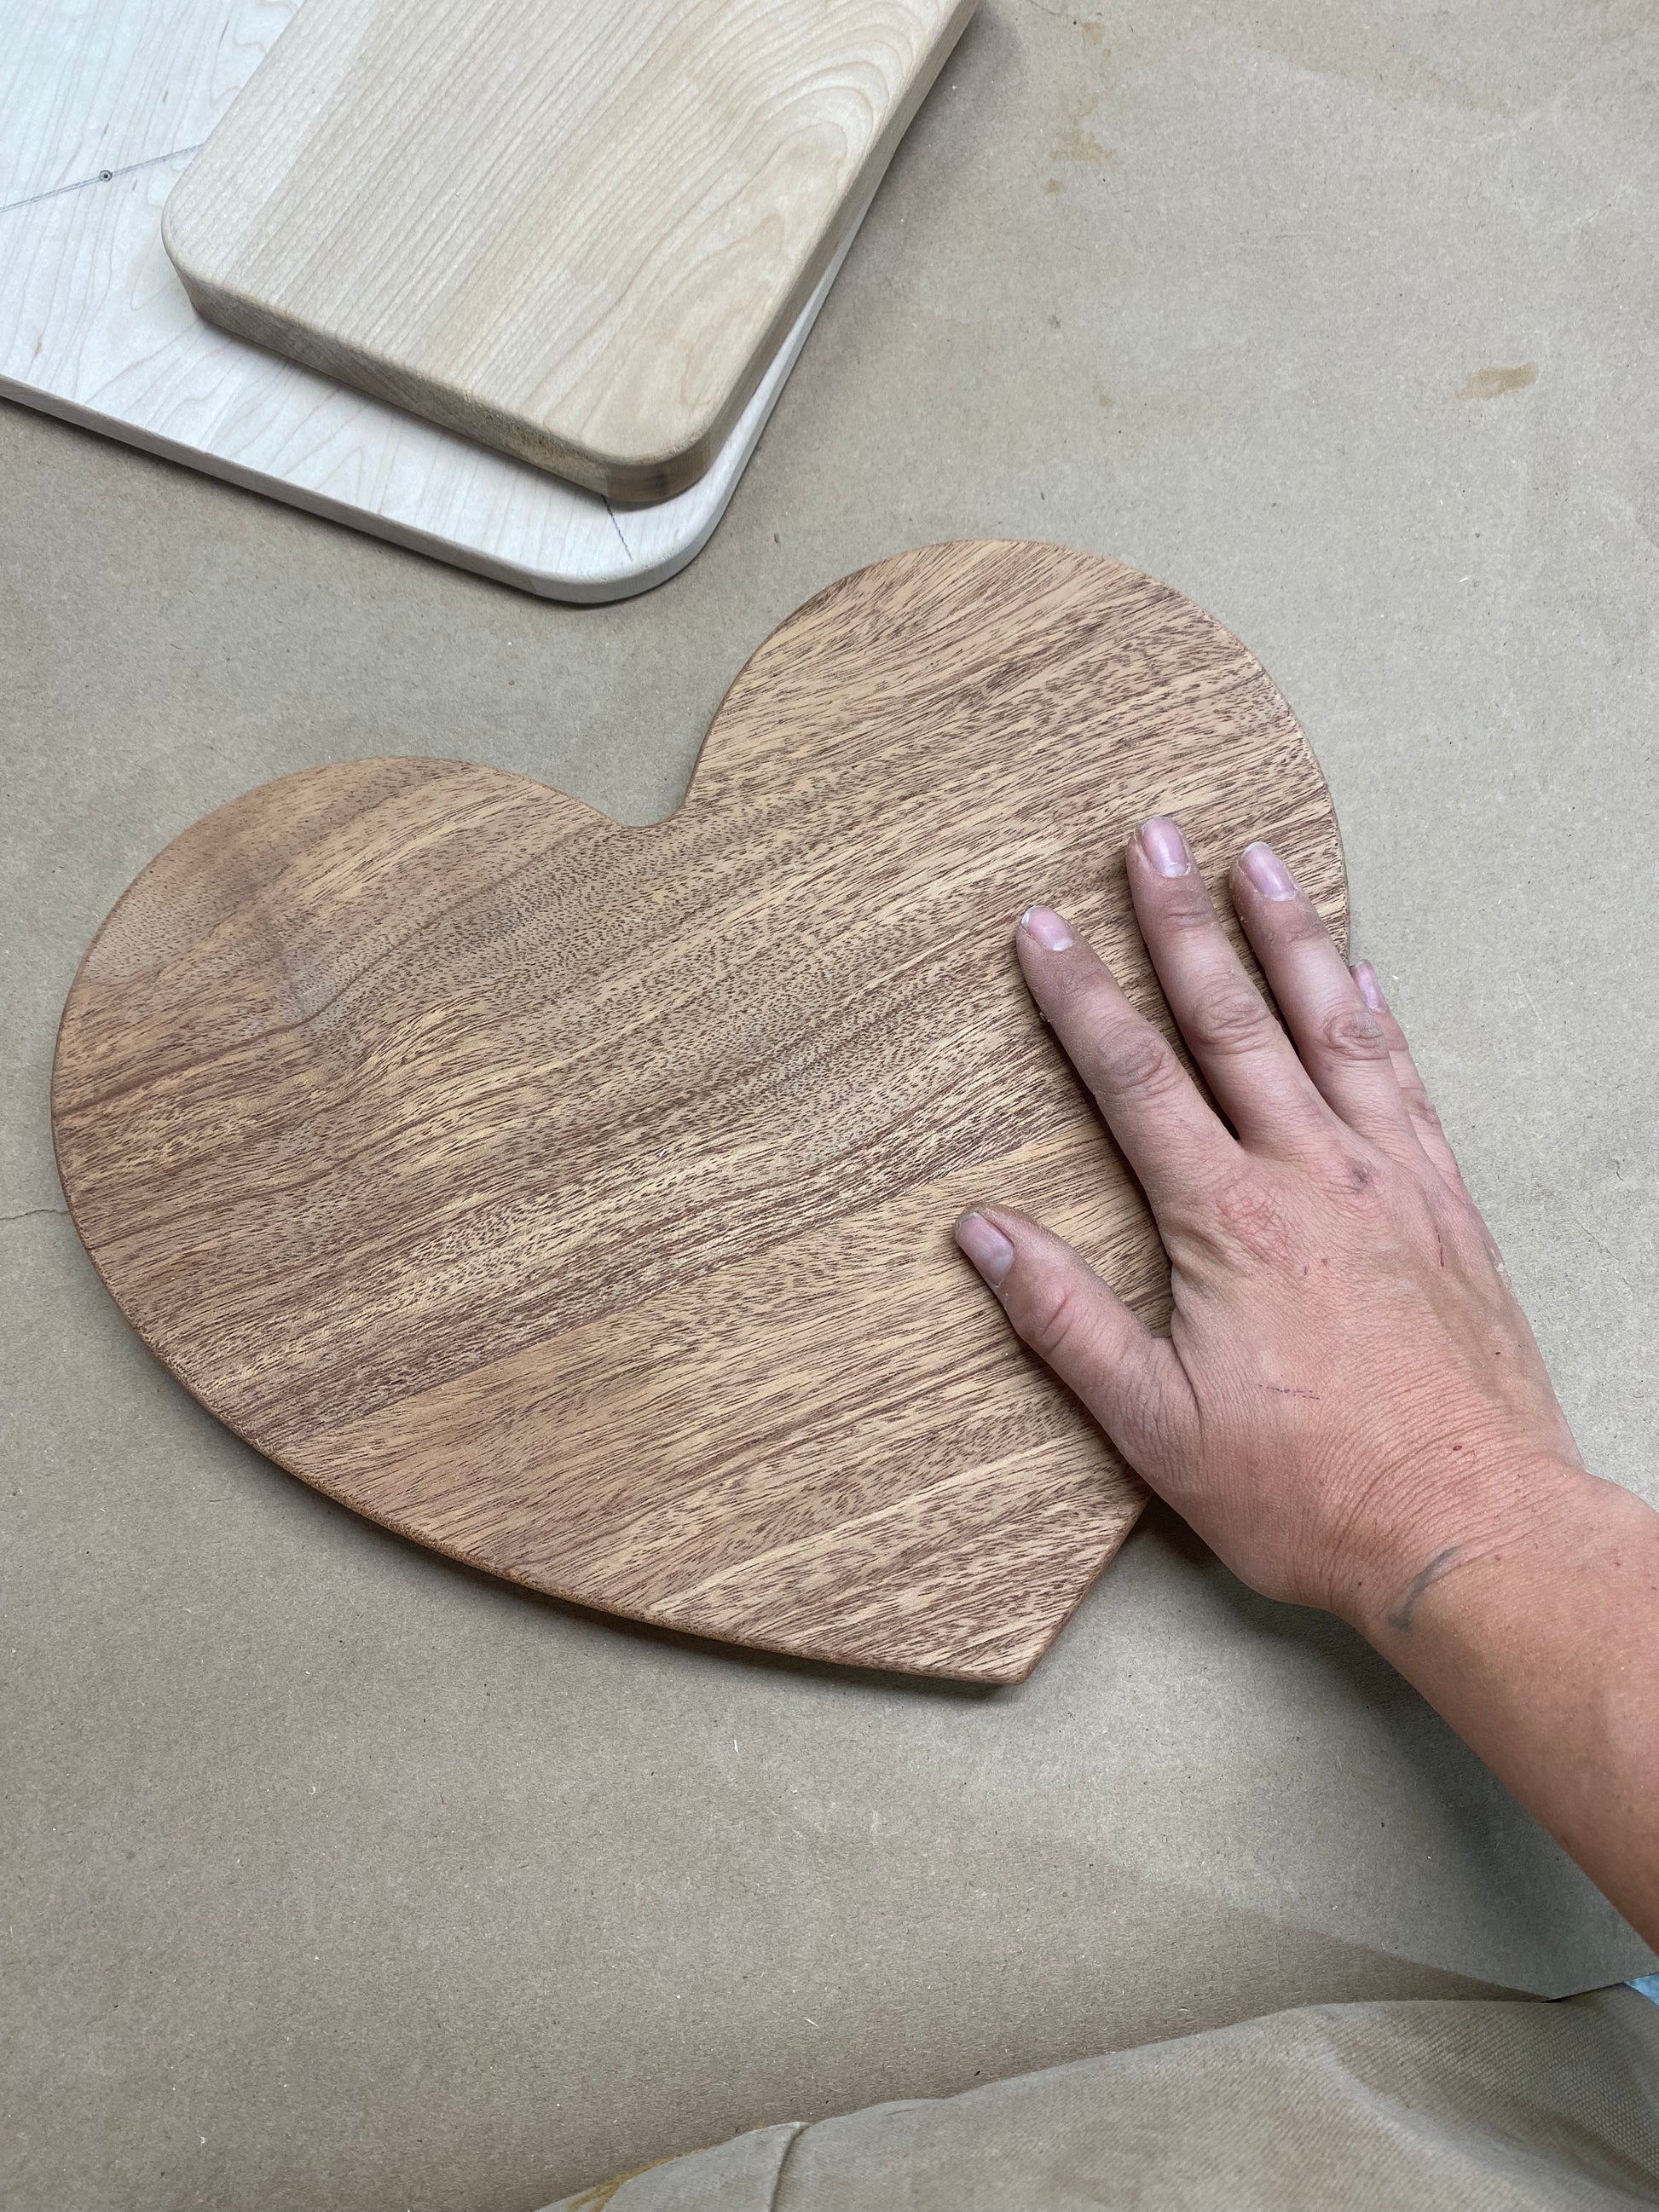 heart shaped cutting board